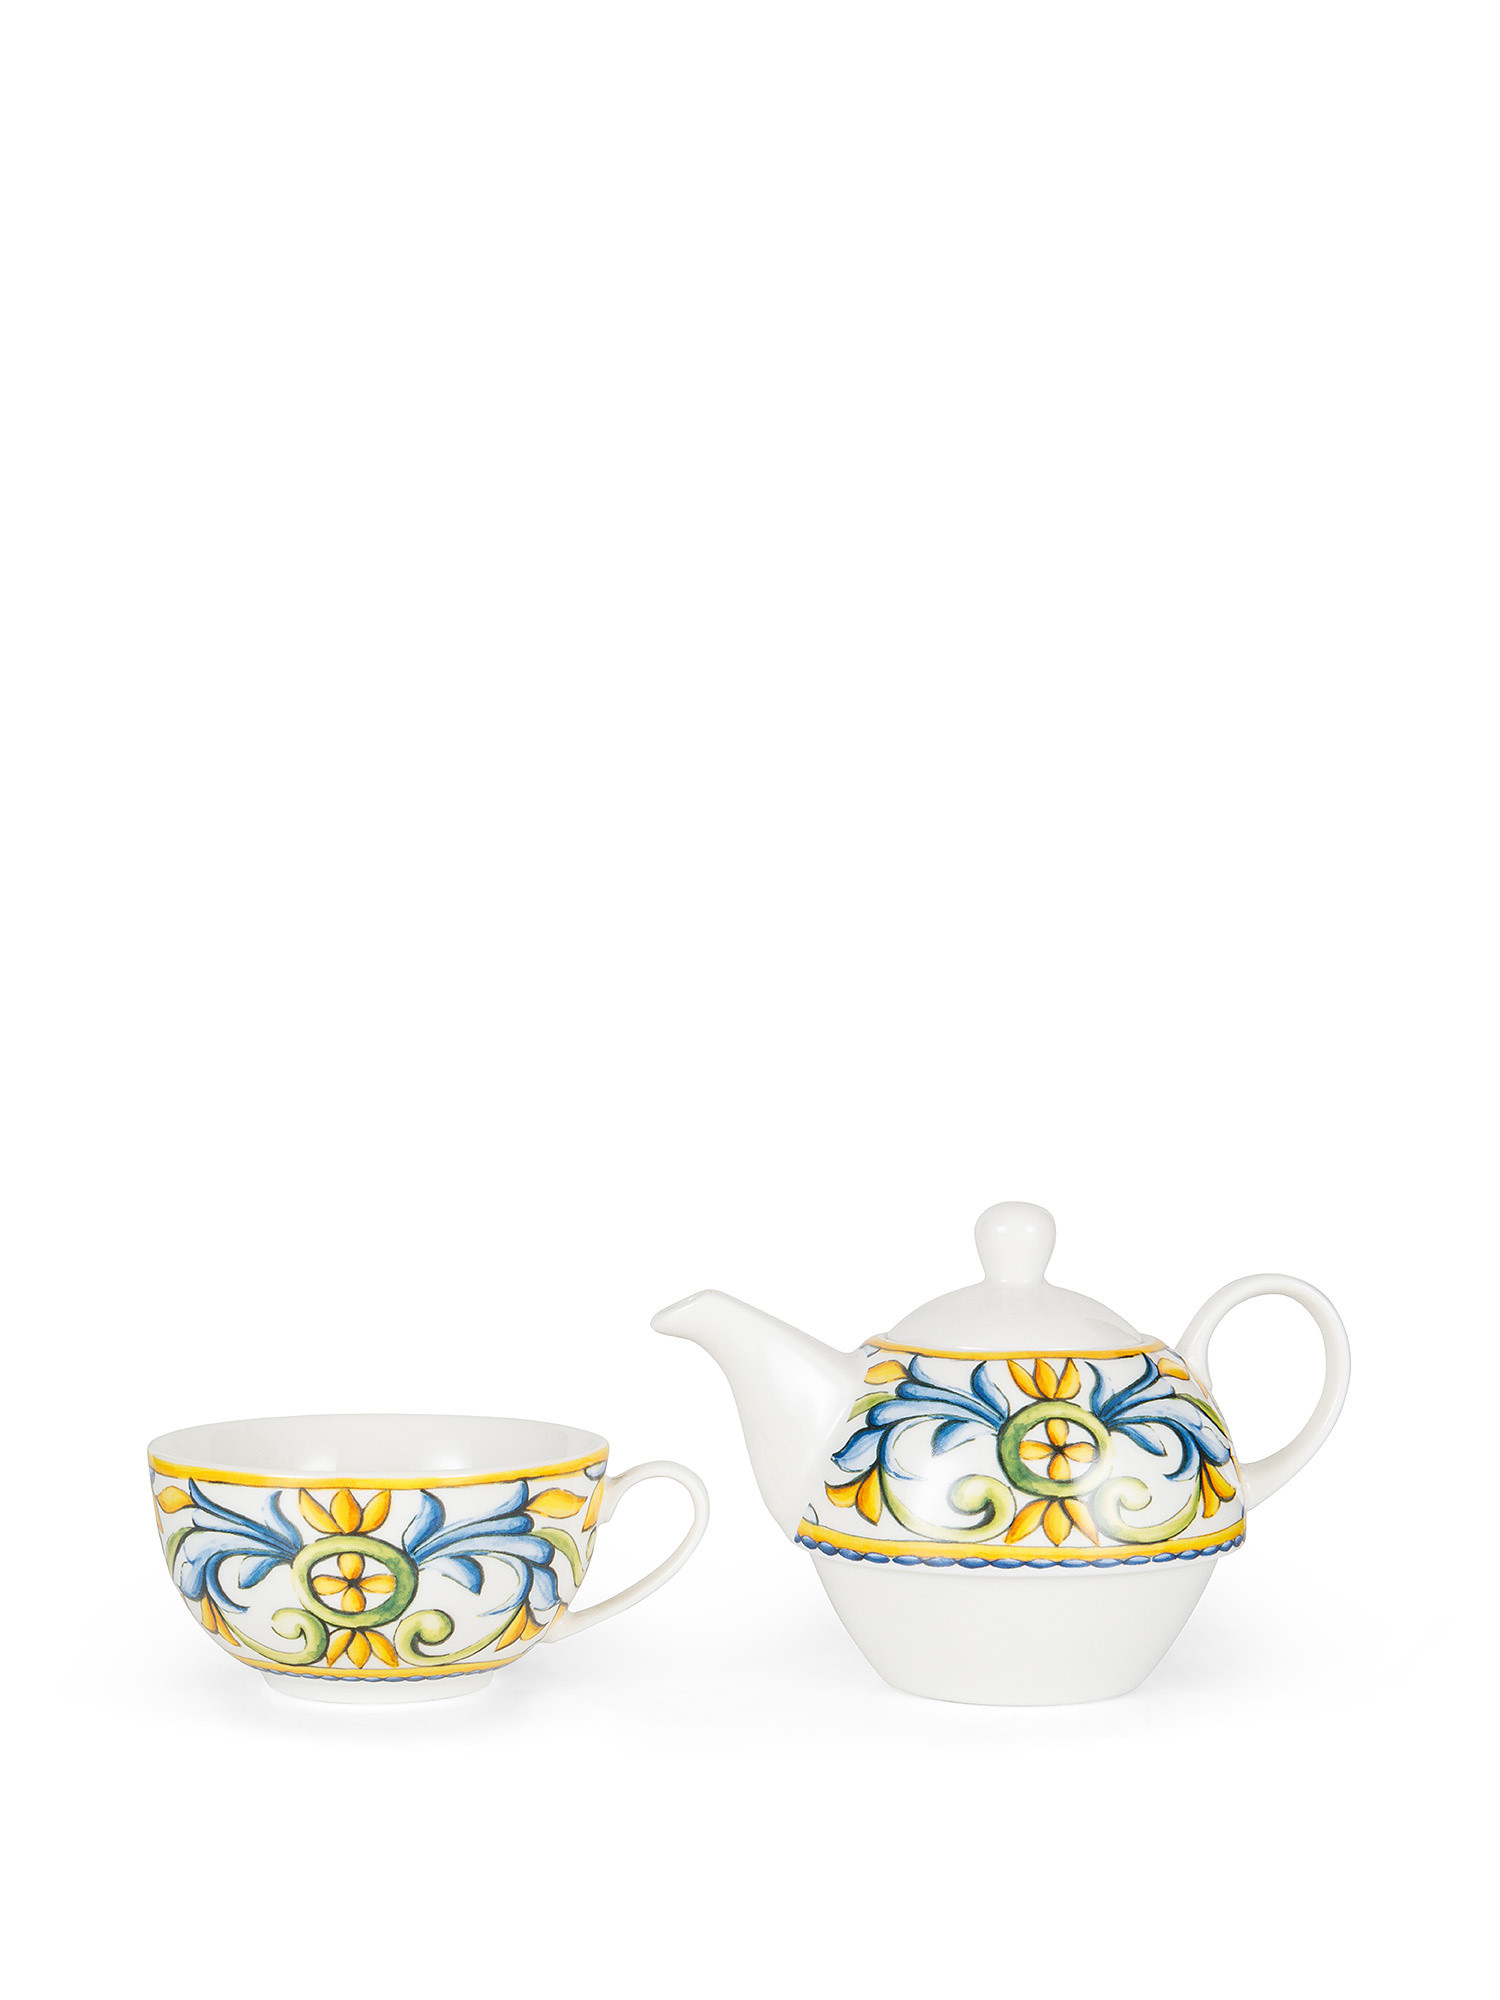 Teaforone new bone china with lemons motif, White, large image number 1